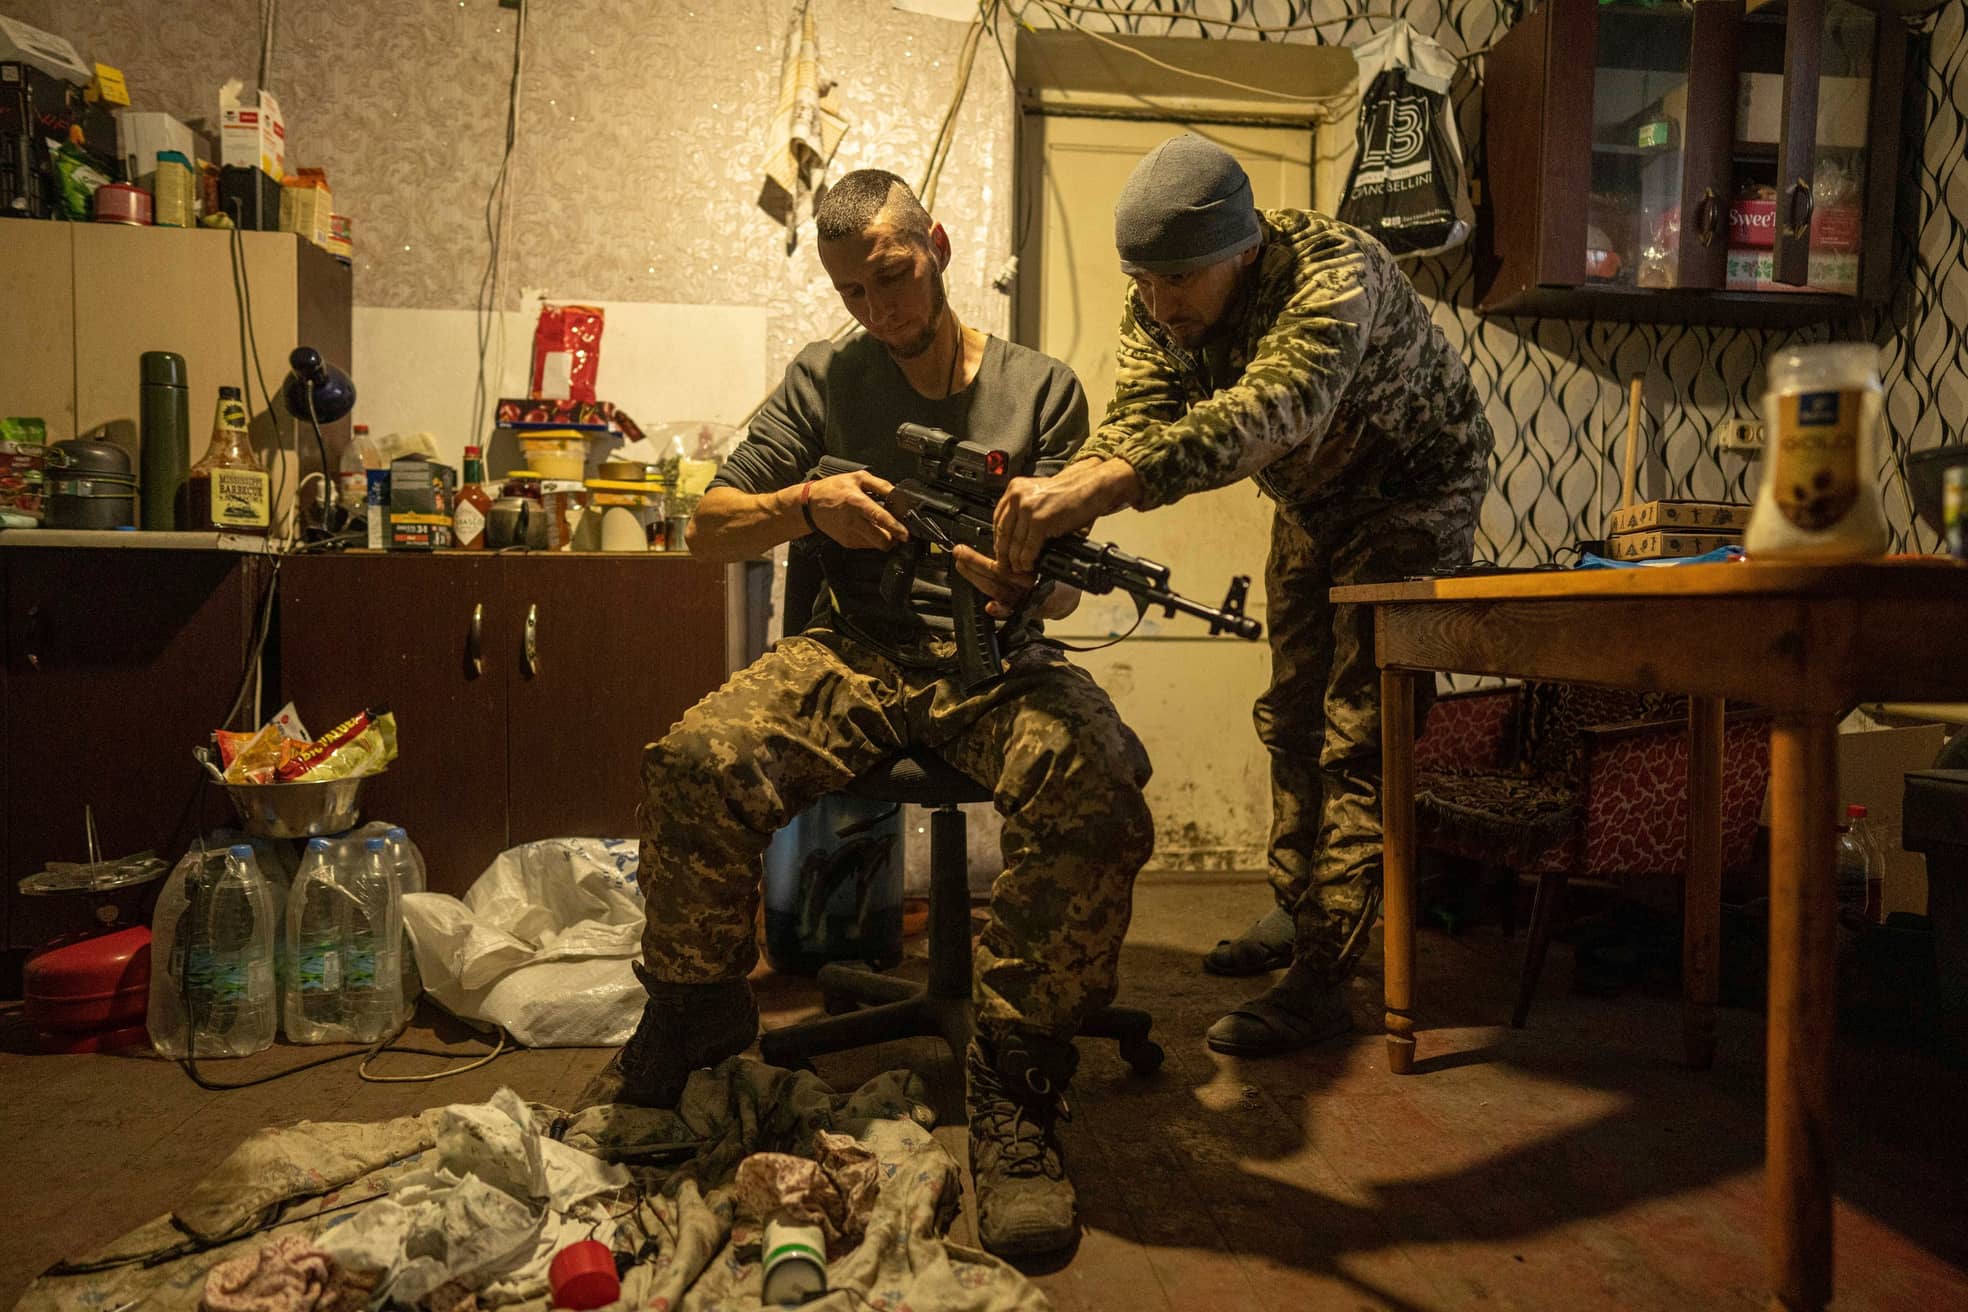 Soldaten des Sich-Bataillons, das schon 2014 von Freiwilligen im Donbass gegründet wurde, montieren ein Zielfernrohr auf eine AK-47.